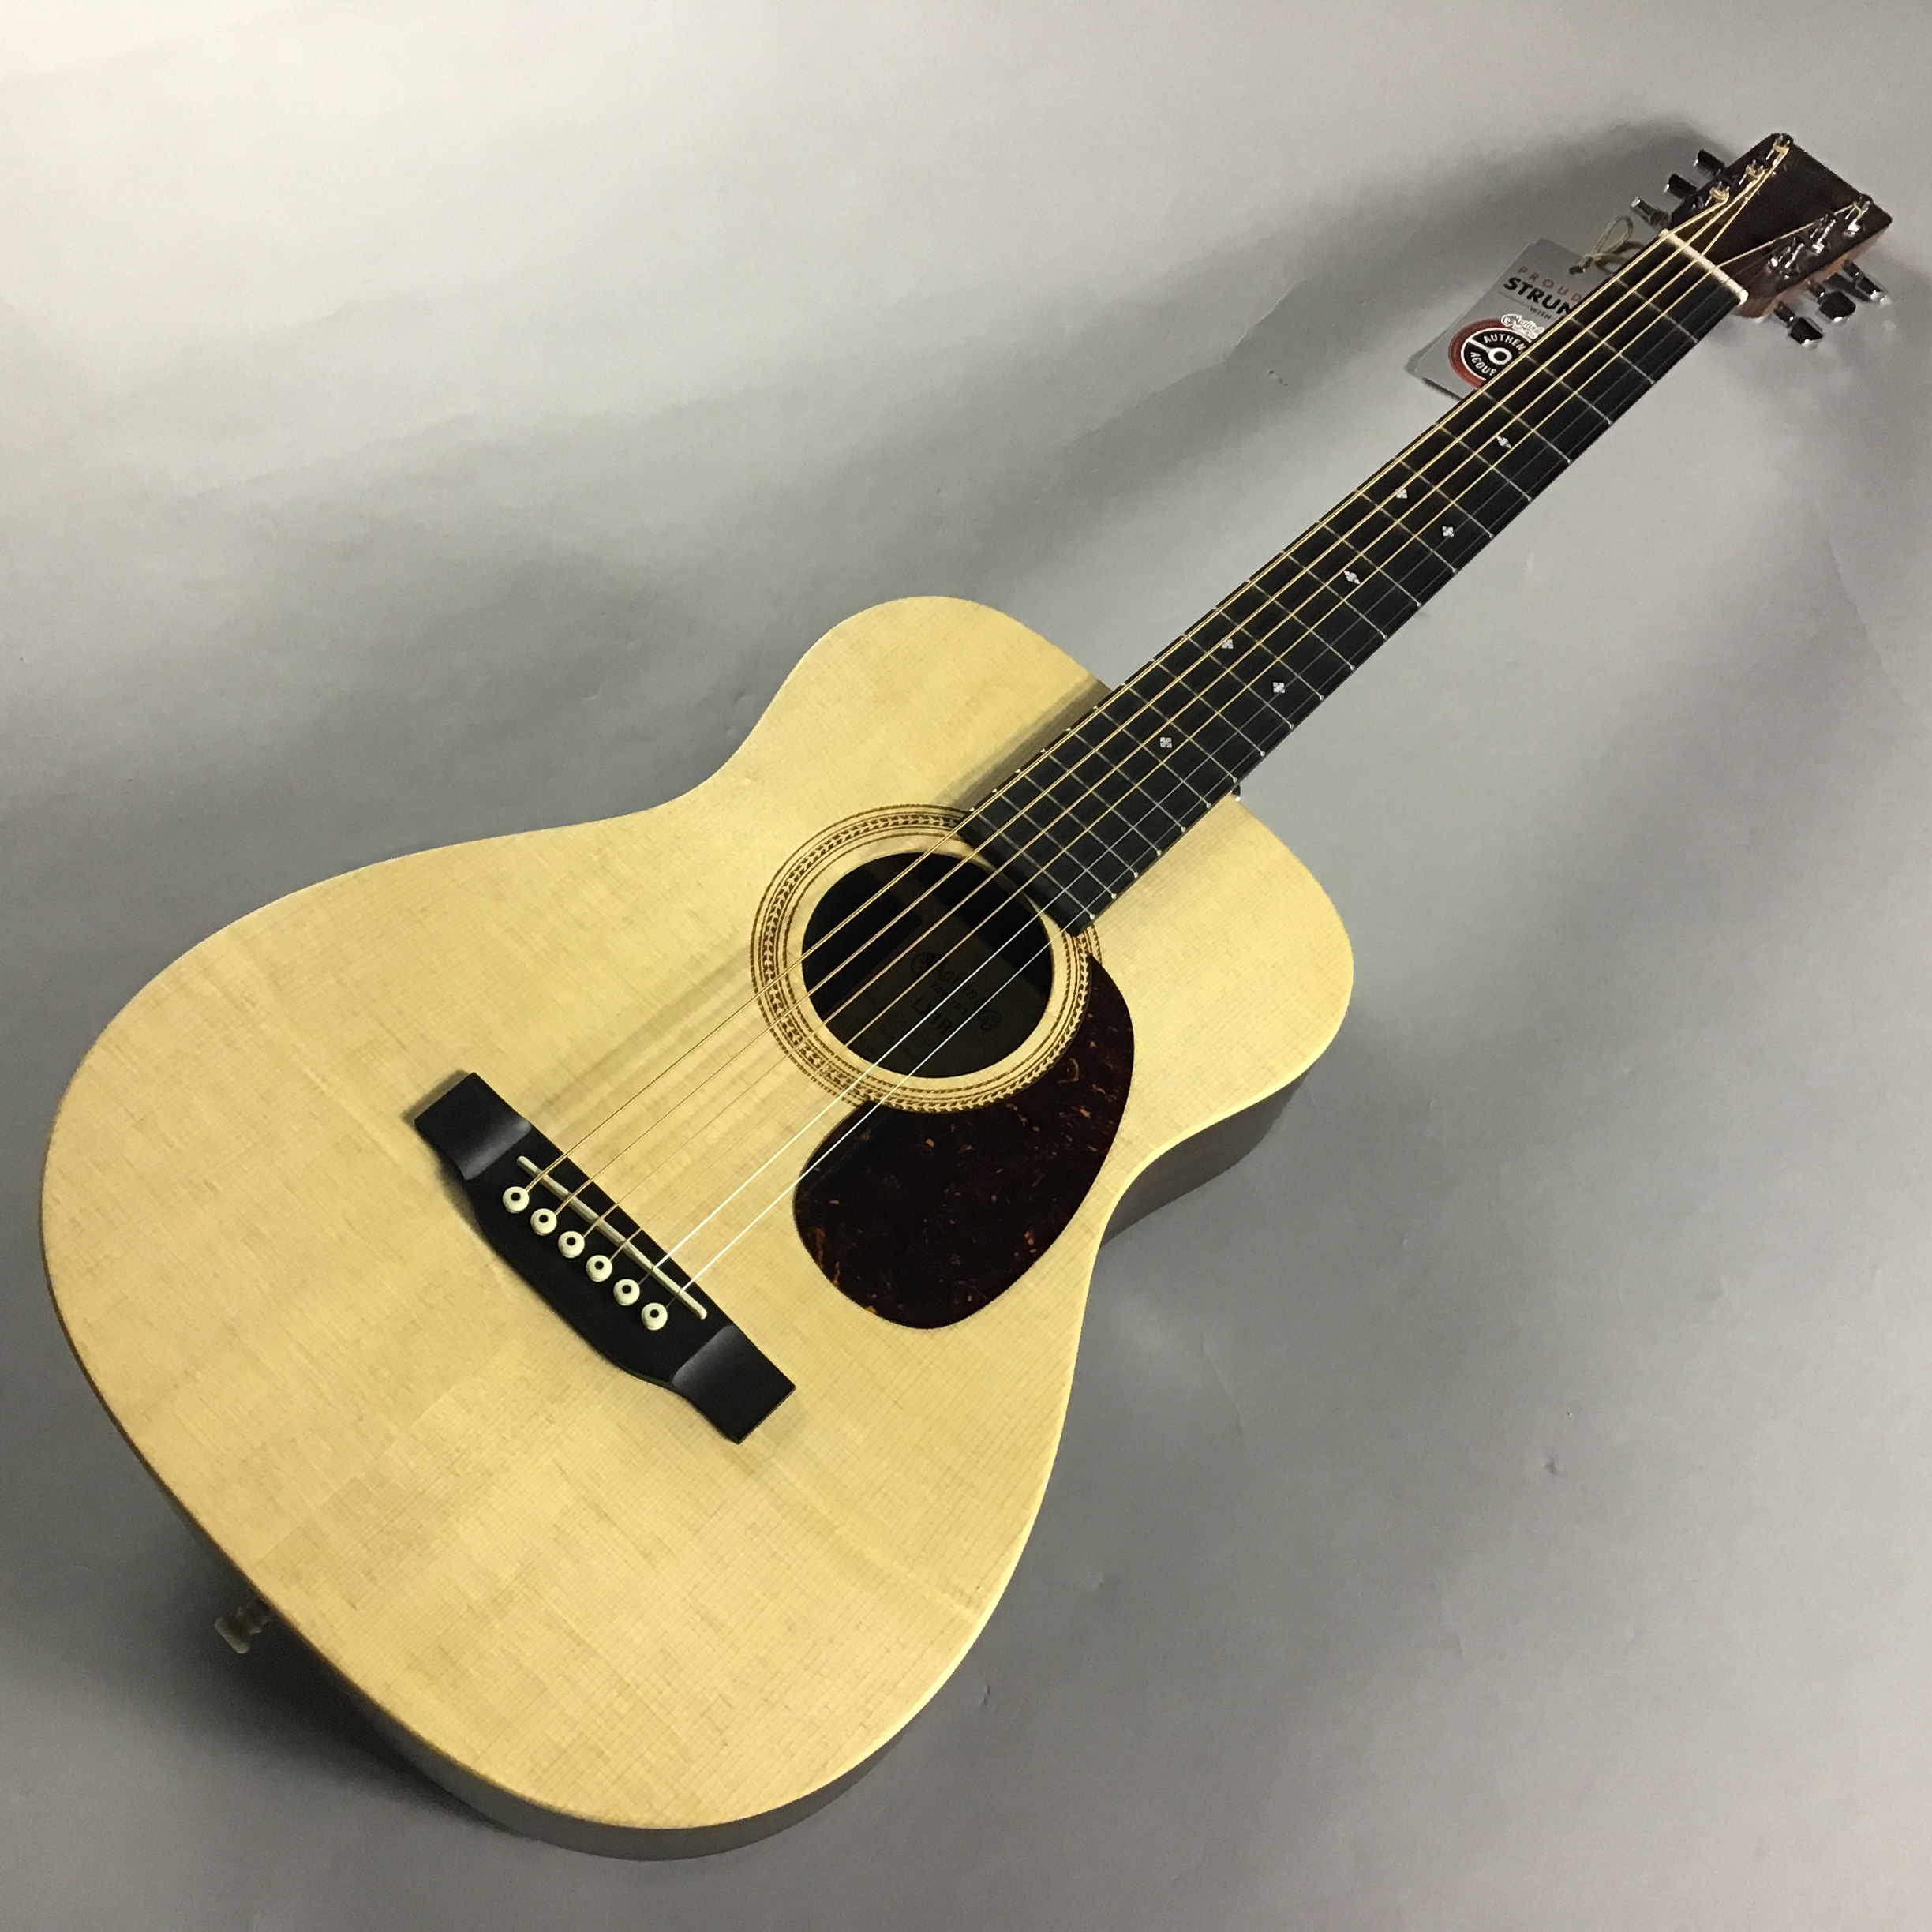 マーチンのNEWミニギター「LX1R」2020年最新モデル 【追記】2021年1月 ...